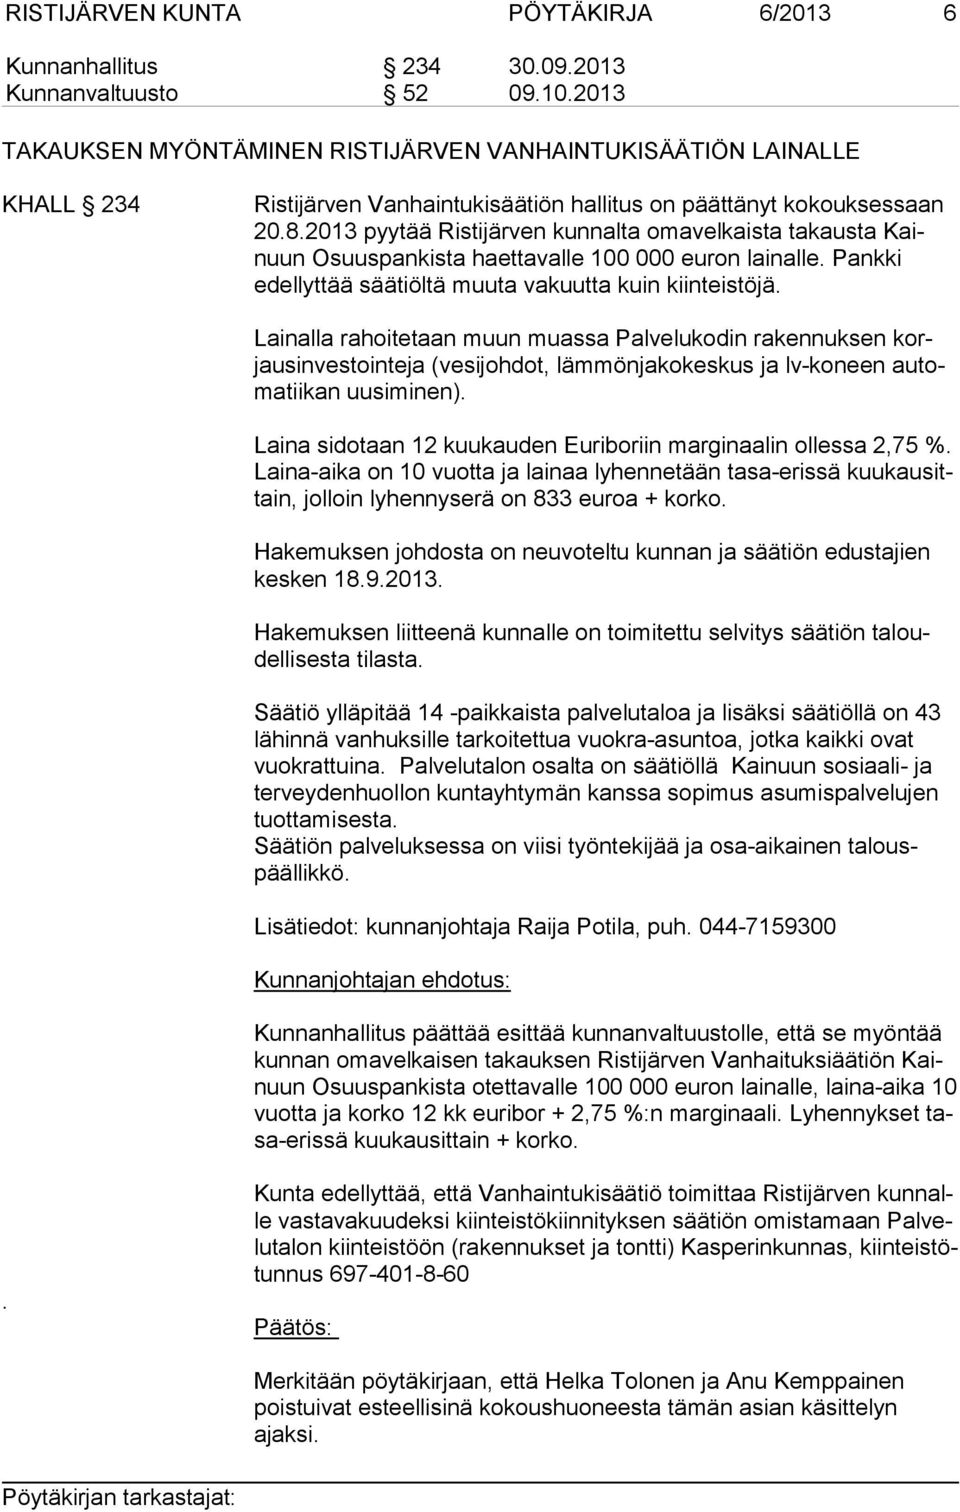 2013 pyytää Ristijärven kunnalta omavelkaista takausta Kainuun Osuuspankista haettavalle 100 000 euron lainalle. Pankki edel lyt tää säätiöltä muuta vakuutta kuin kiinteistöjä.